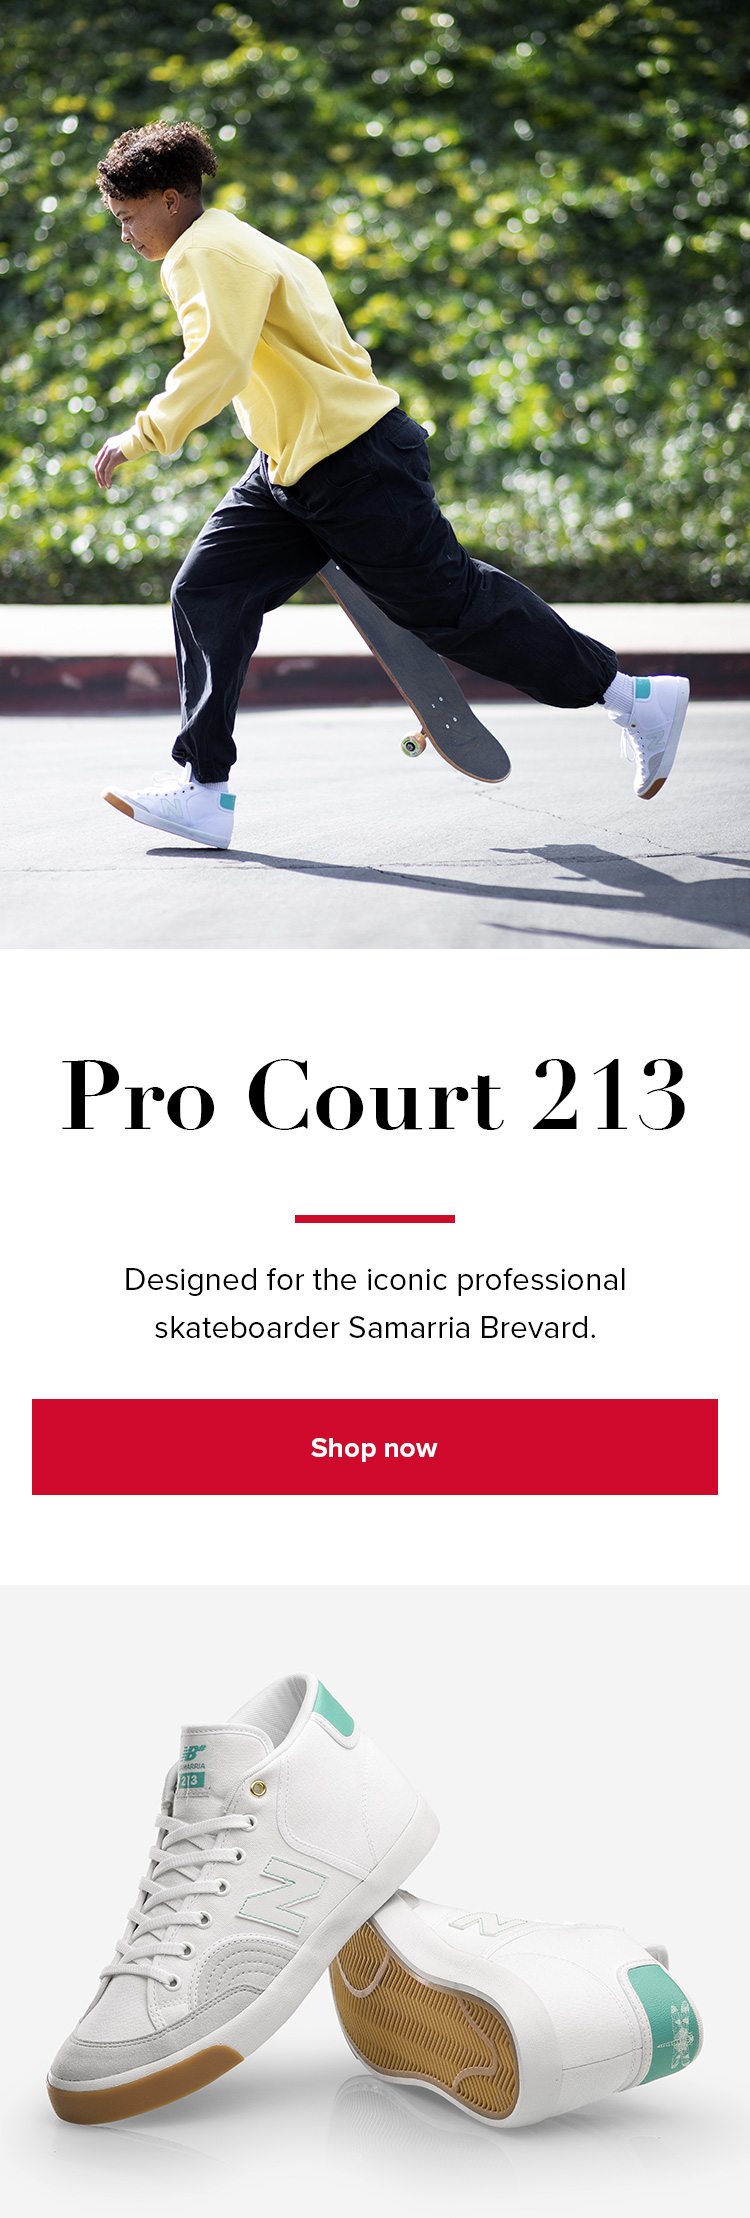 Shop the Pro Court 213